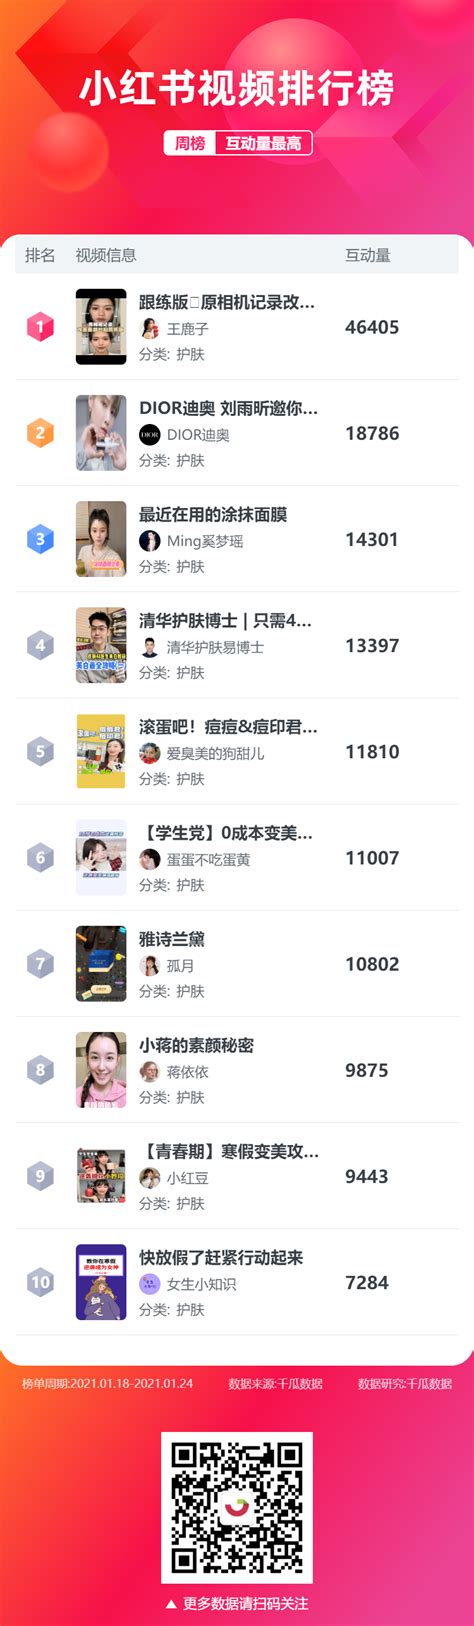 1月第3周小红书、抖音、快手、B站、淘宝榜单 - 千瓜数据 - qian-gua.com